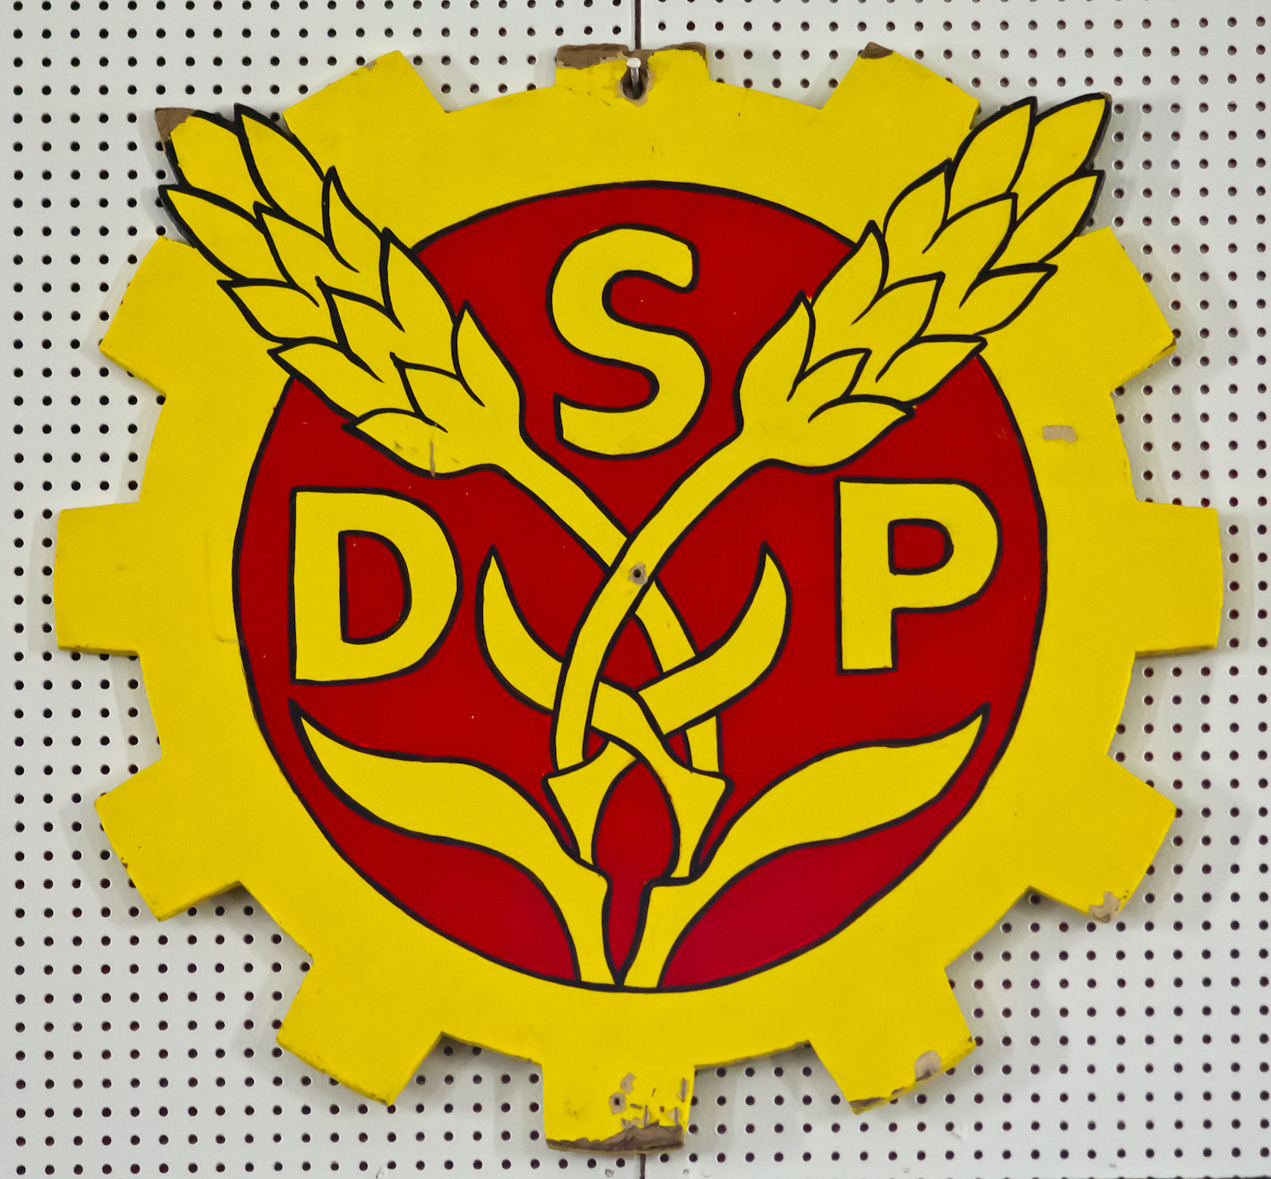 SDP, photo 183081, 2011-11-12